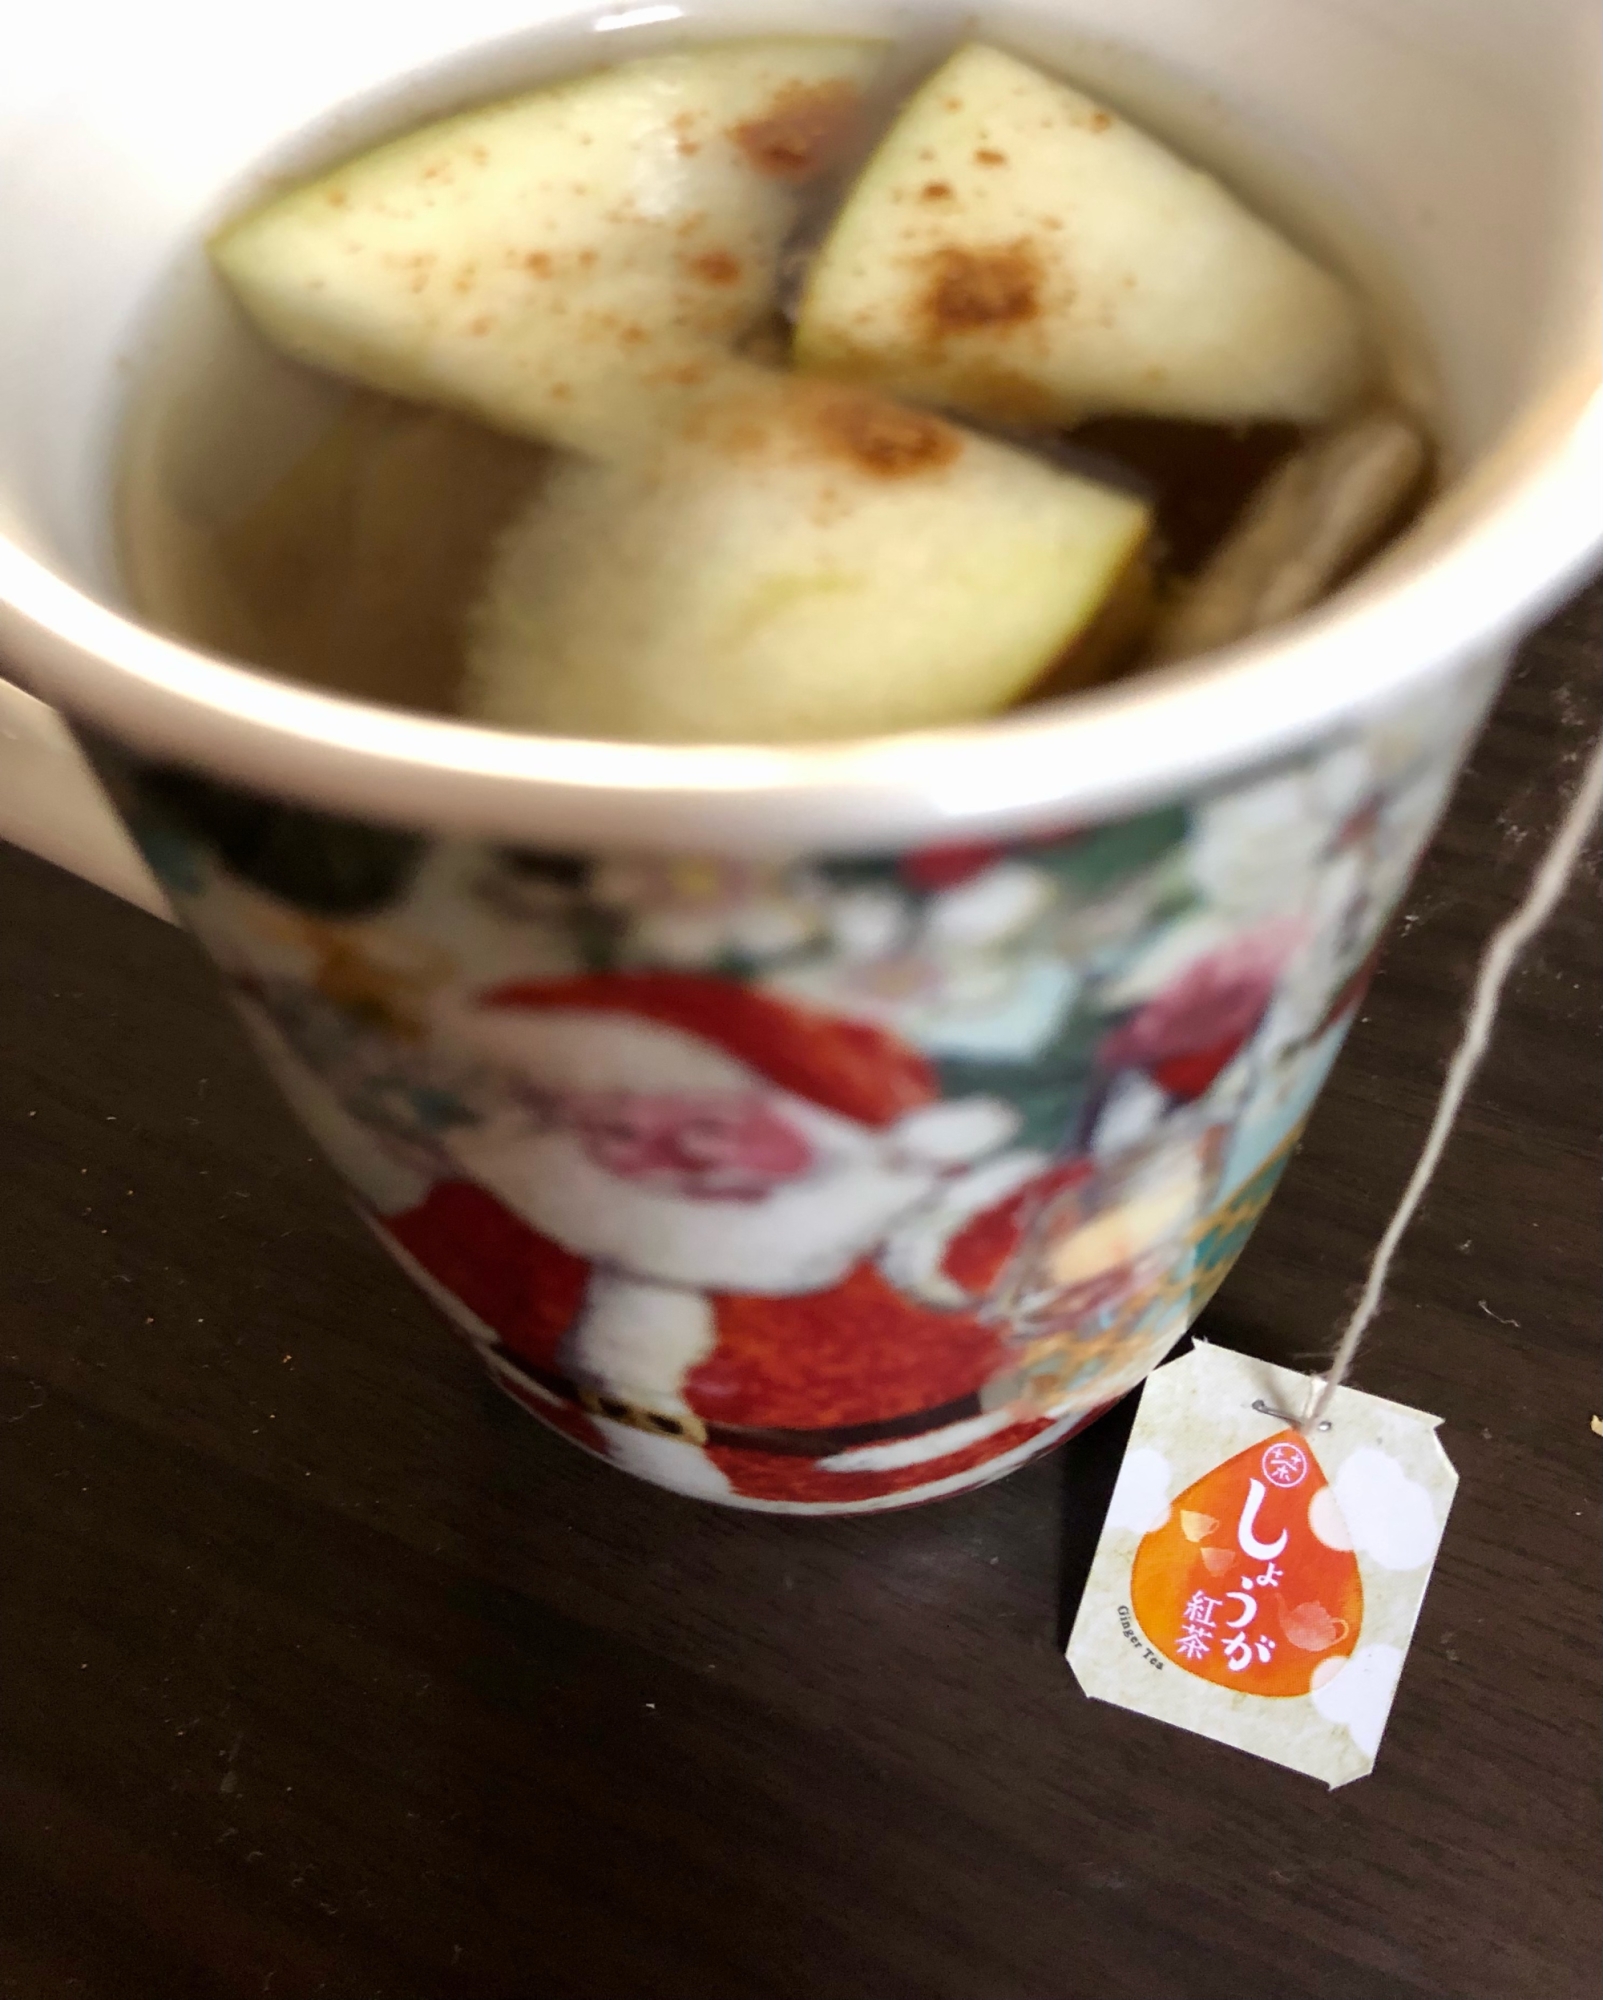 風邪にも温まる●蜂蜜リンゴ入りしょうが紅茶